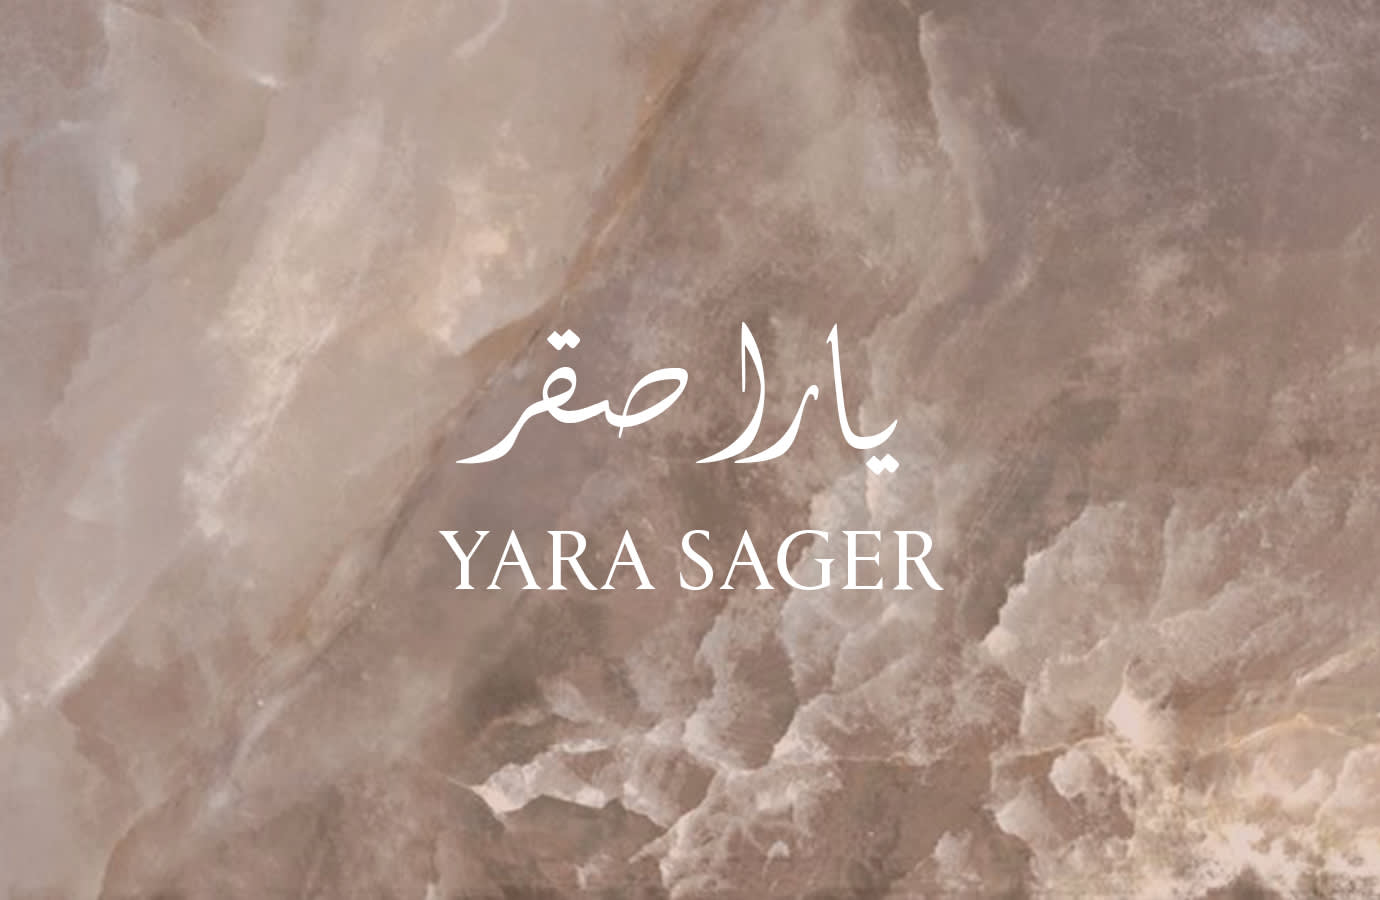 Yara Sager TEXT ONLY LP@1x